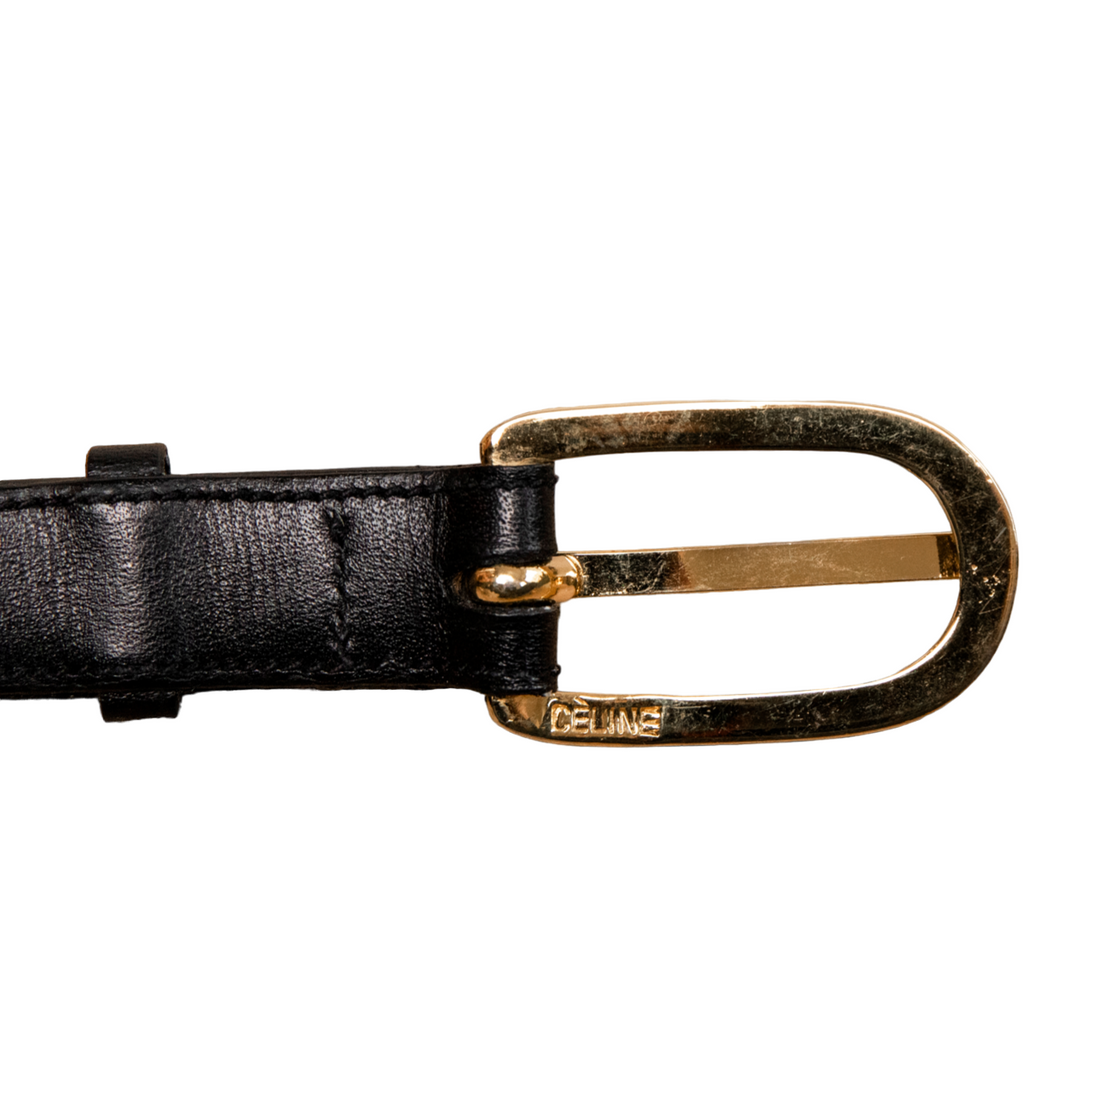 Celine Black vintage belt with gold hardware